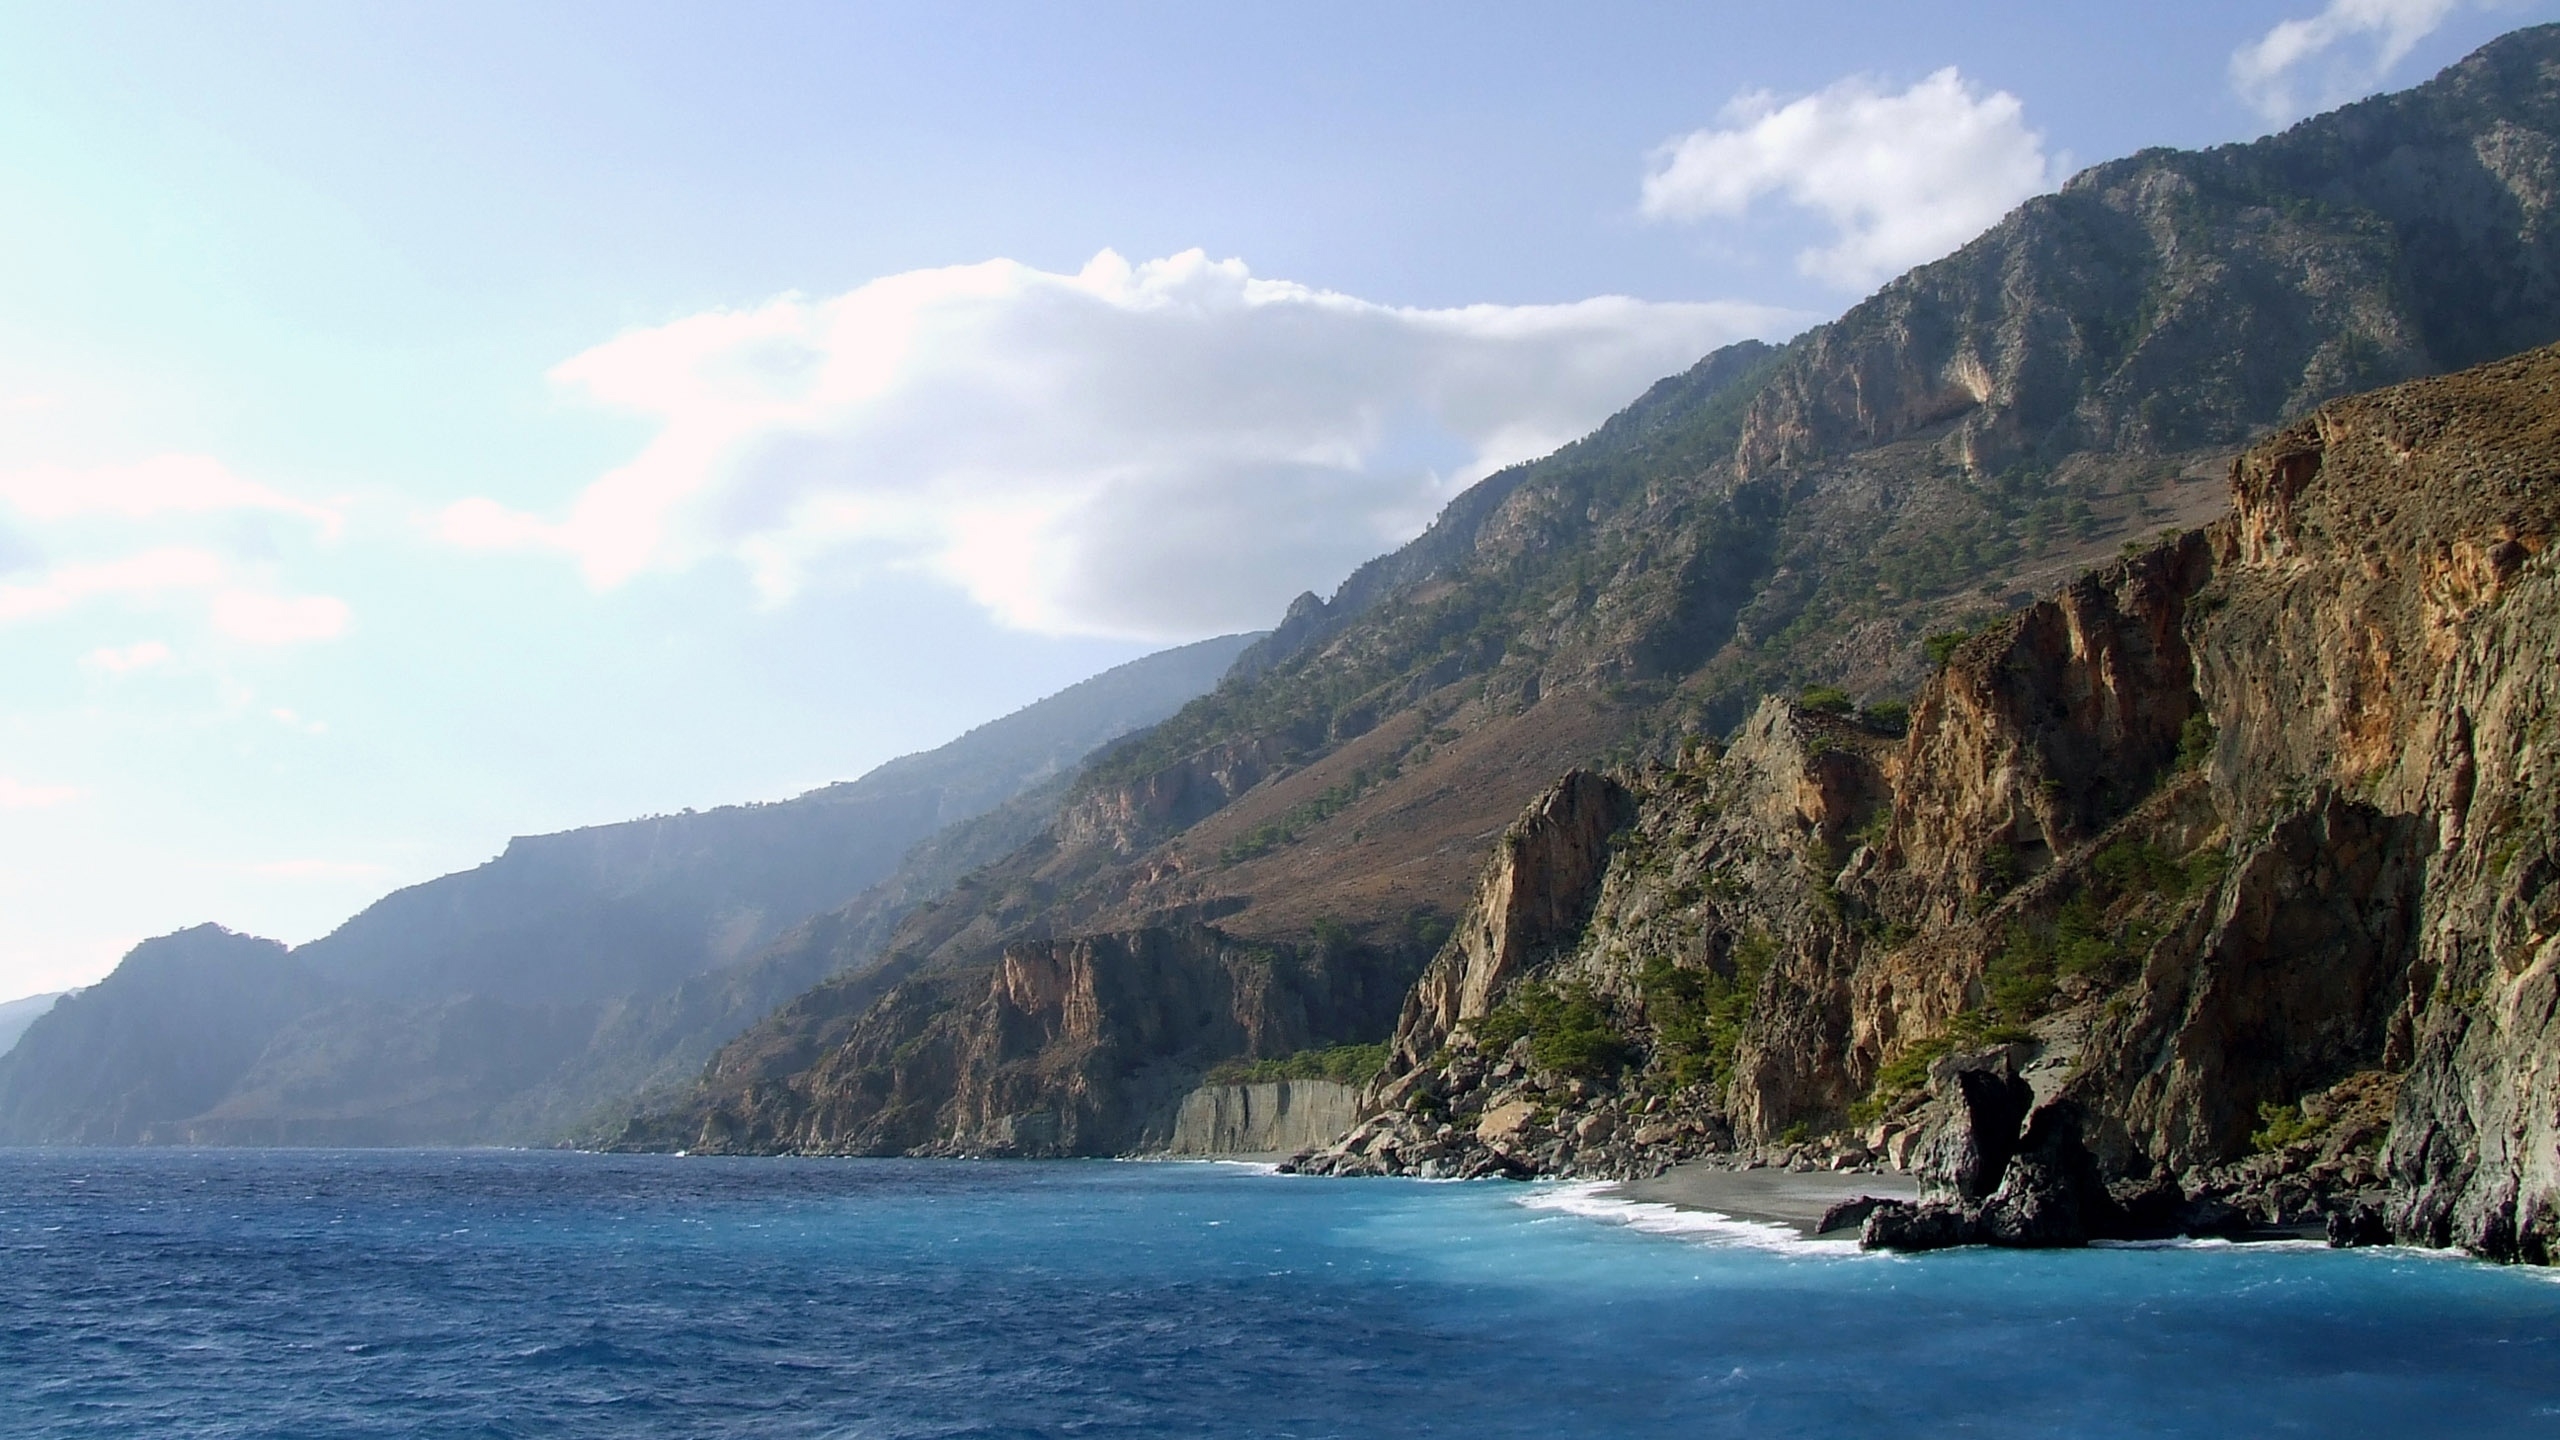 Crete Cliffs for 2560x1440 HDTV resolution